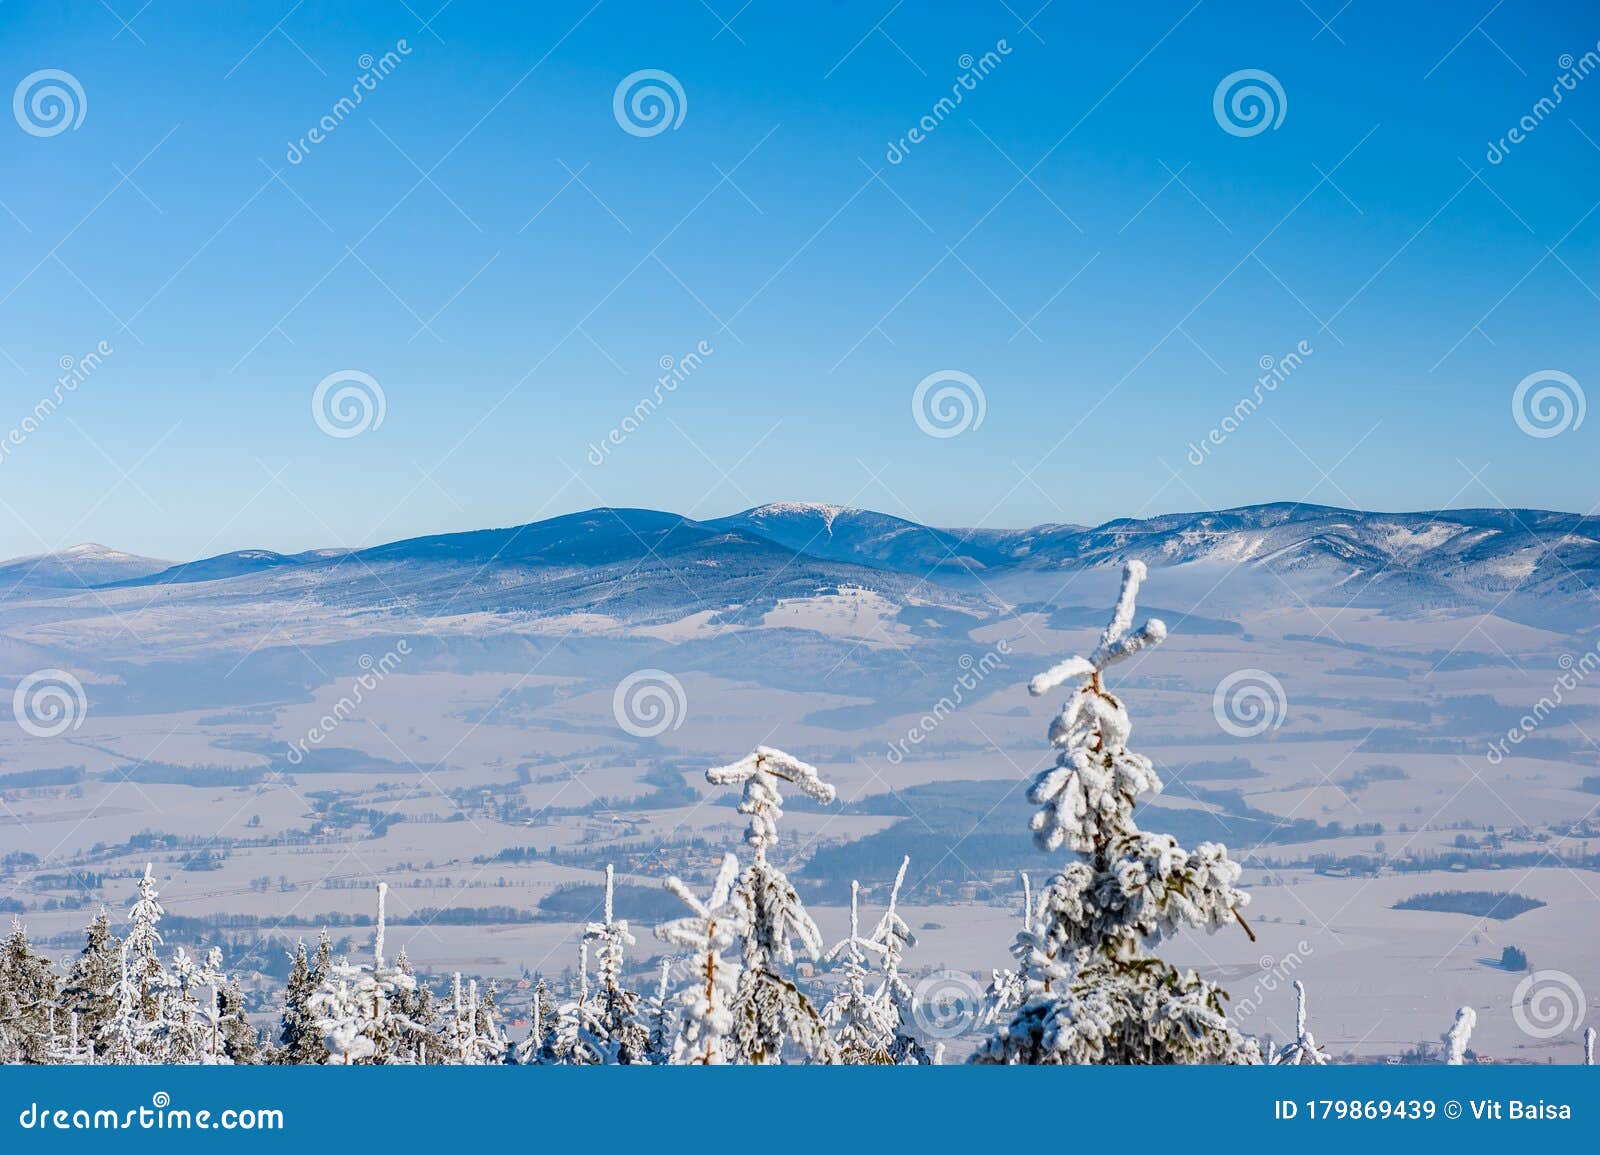 捷克雪山的冬季景观 日出的光 有树的捷克山 奥利克山 捷克共和国美丽的冬季风景库存图片 图片包括有美丽的冬季风景 捷克雪山的冬季景观 日出的光 有树的捷克山 奥利克山 捷克共和国